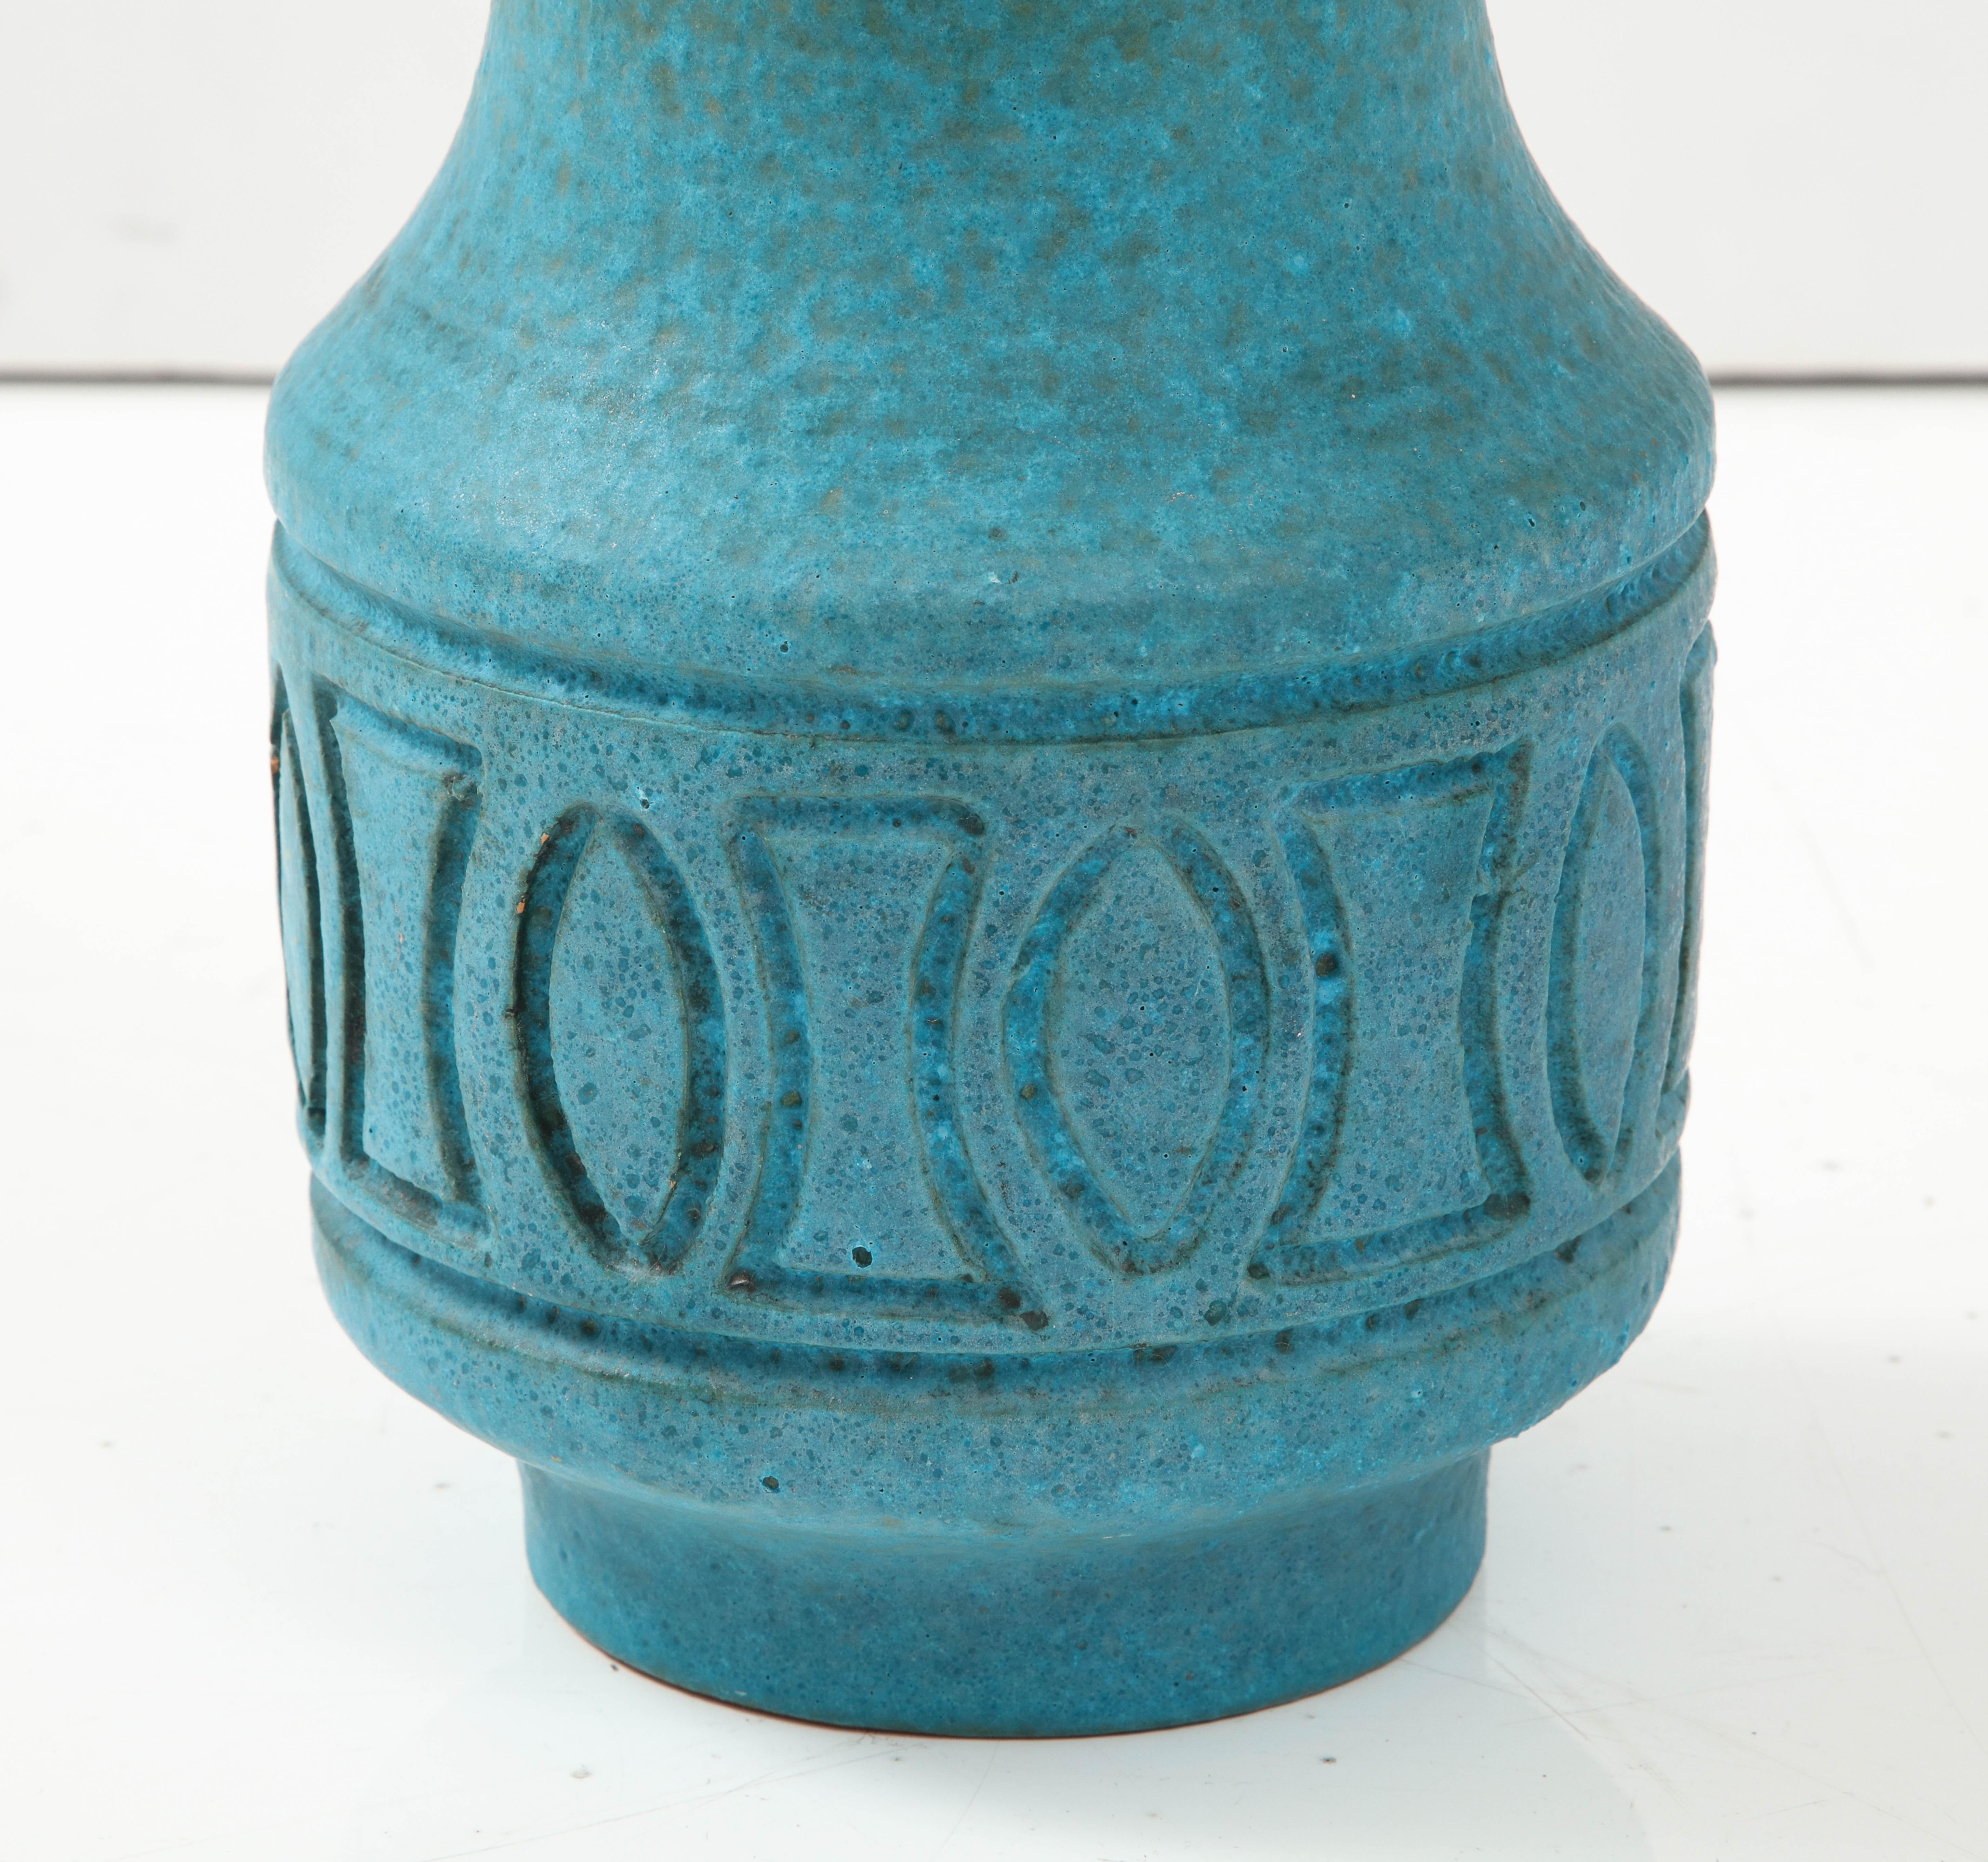 1970's Mid-Century Modern Keramik dekorative Vase von Rosenthal Netter. in Vintage Originalzustand mit geringen Verschleiß und Patina aufgrund von Alter und Nutzung.